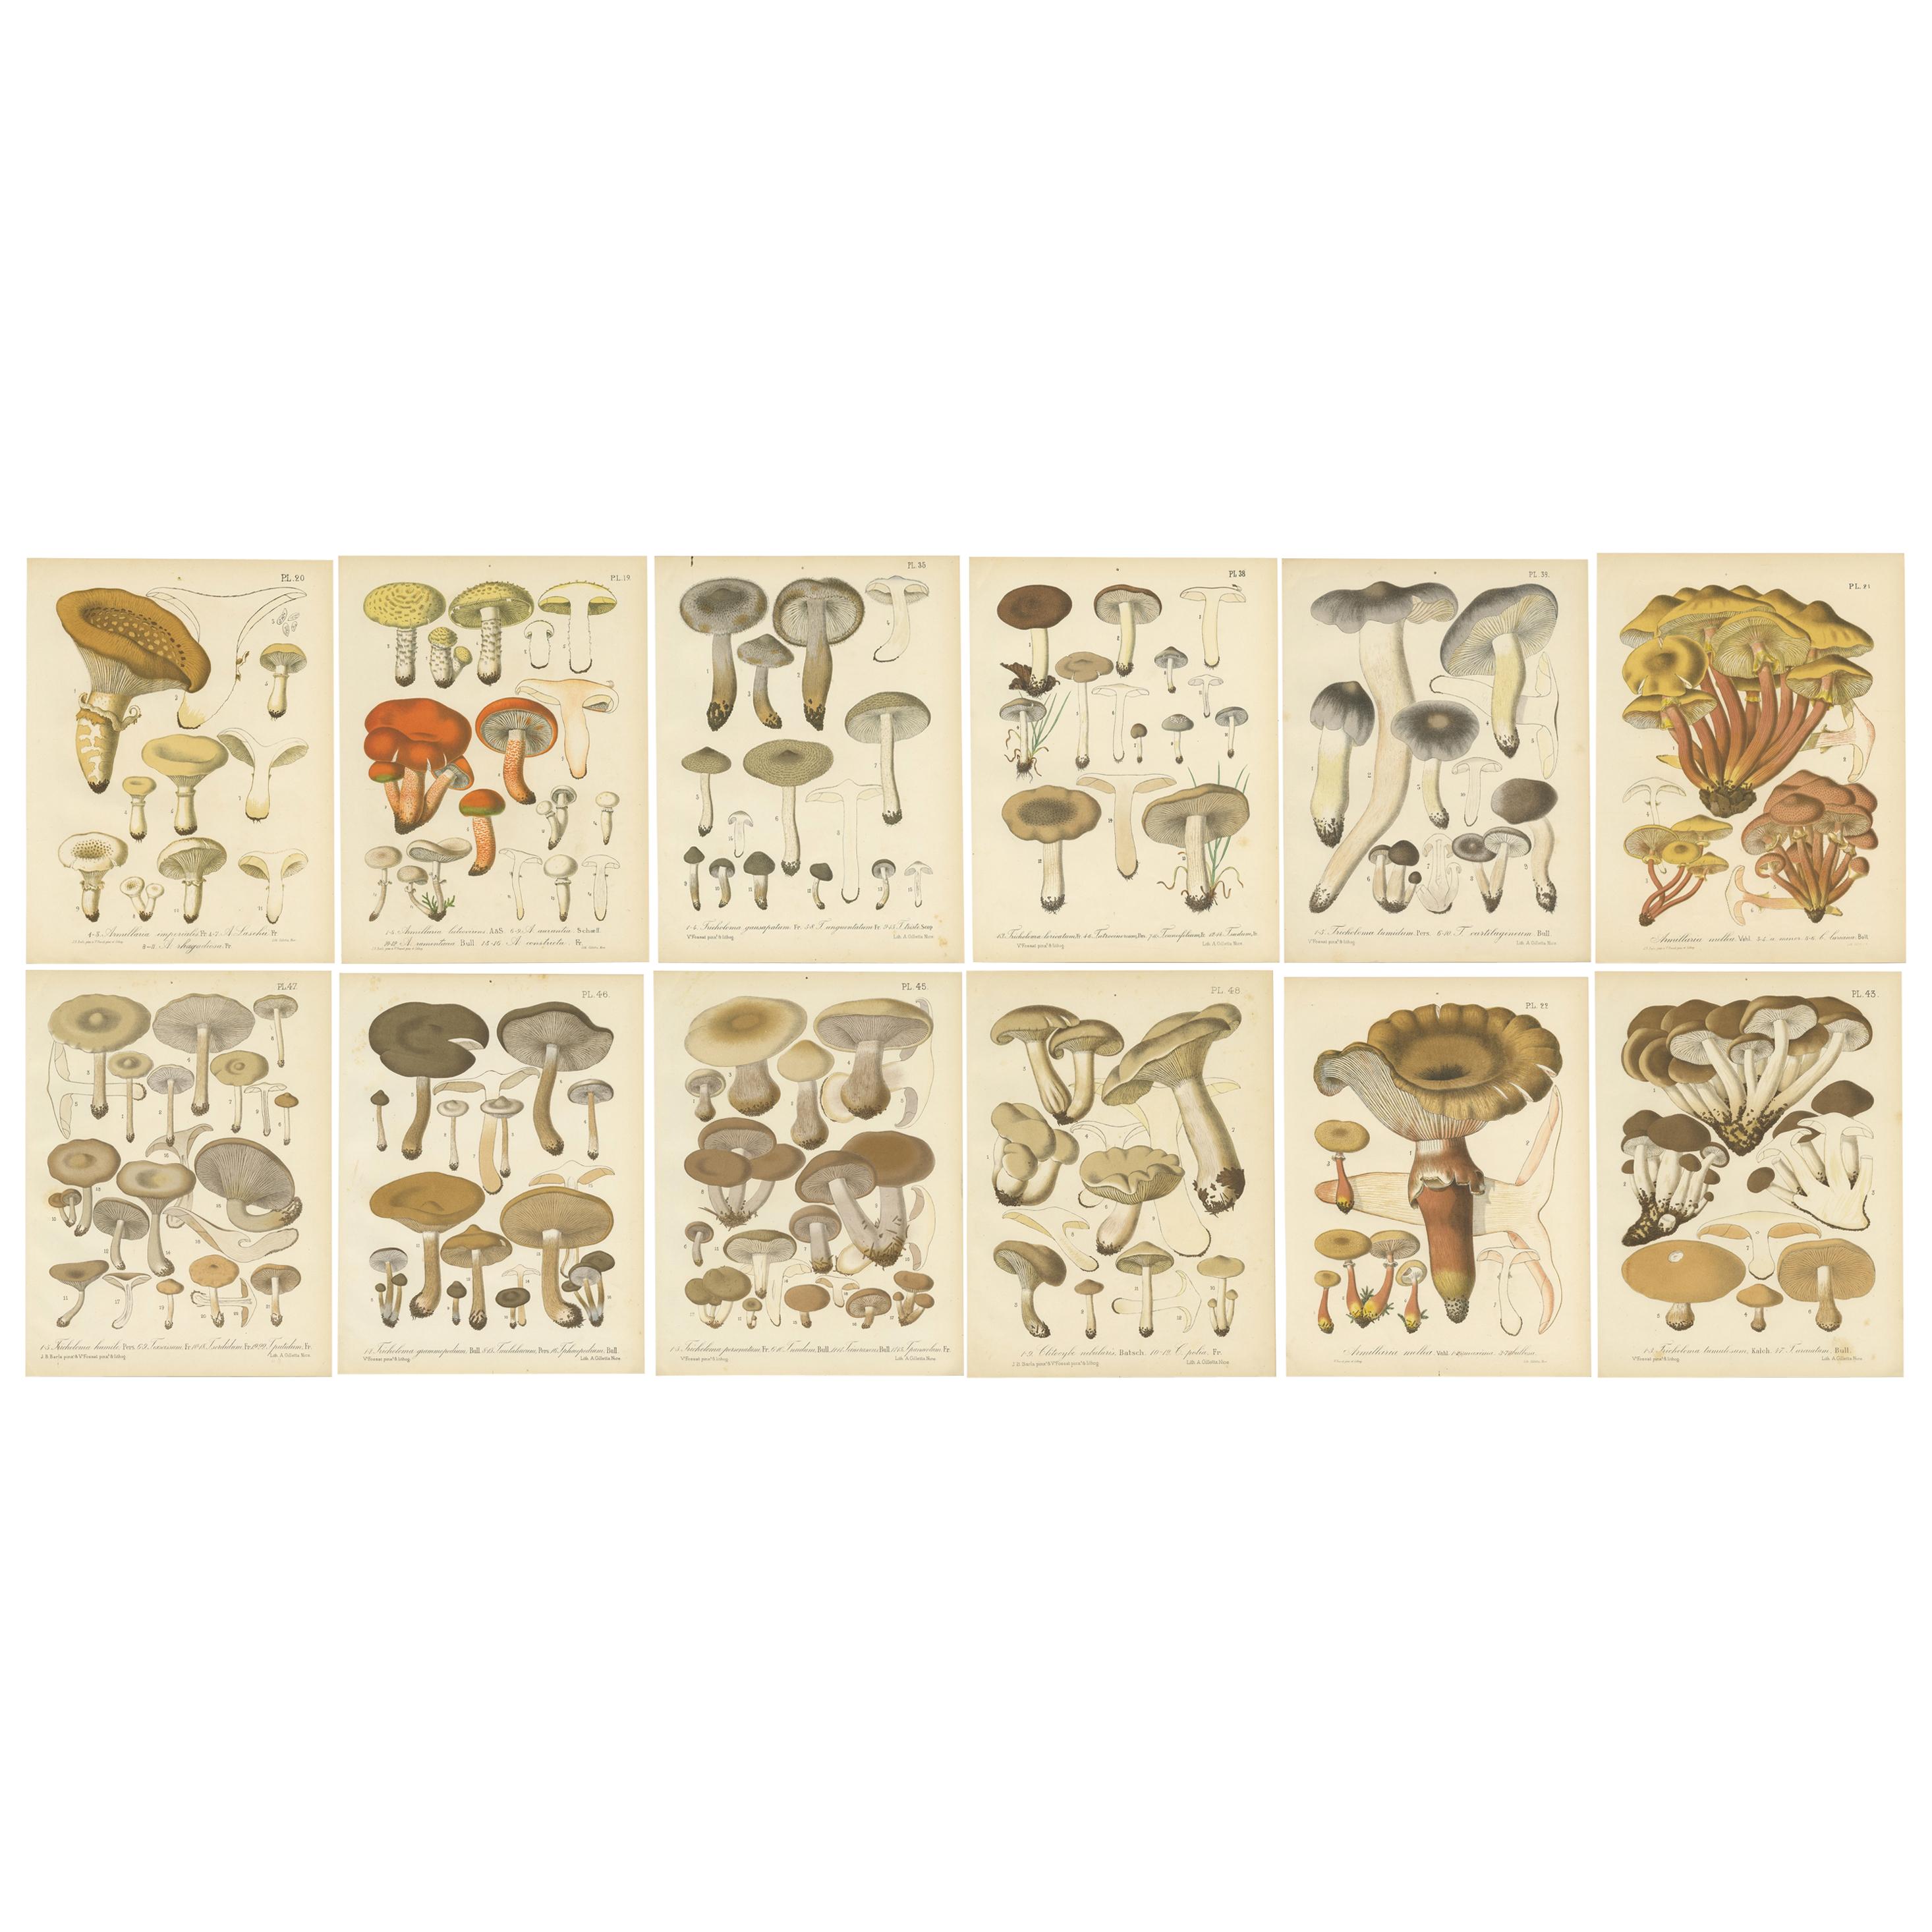 Set von 12 antiken Mycology-Druckdrucken von verschiedenen Fungi von Barla, um 1890